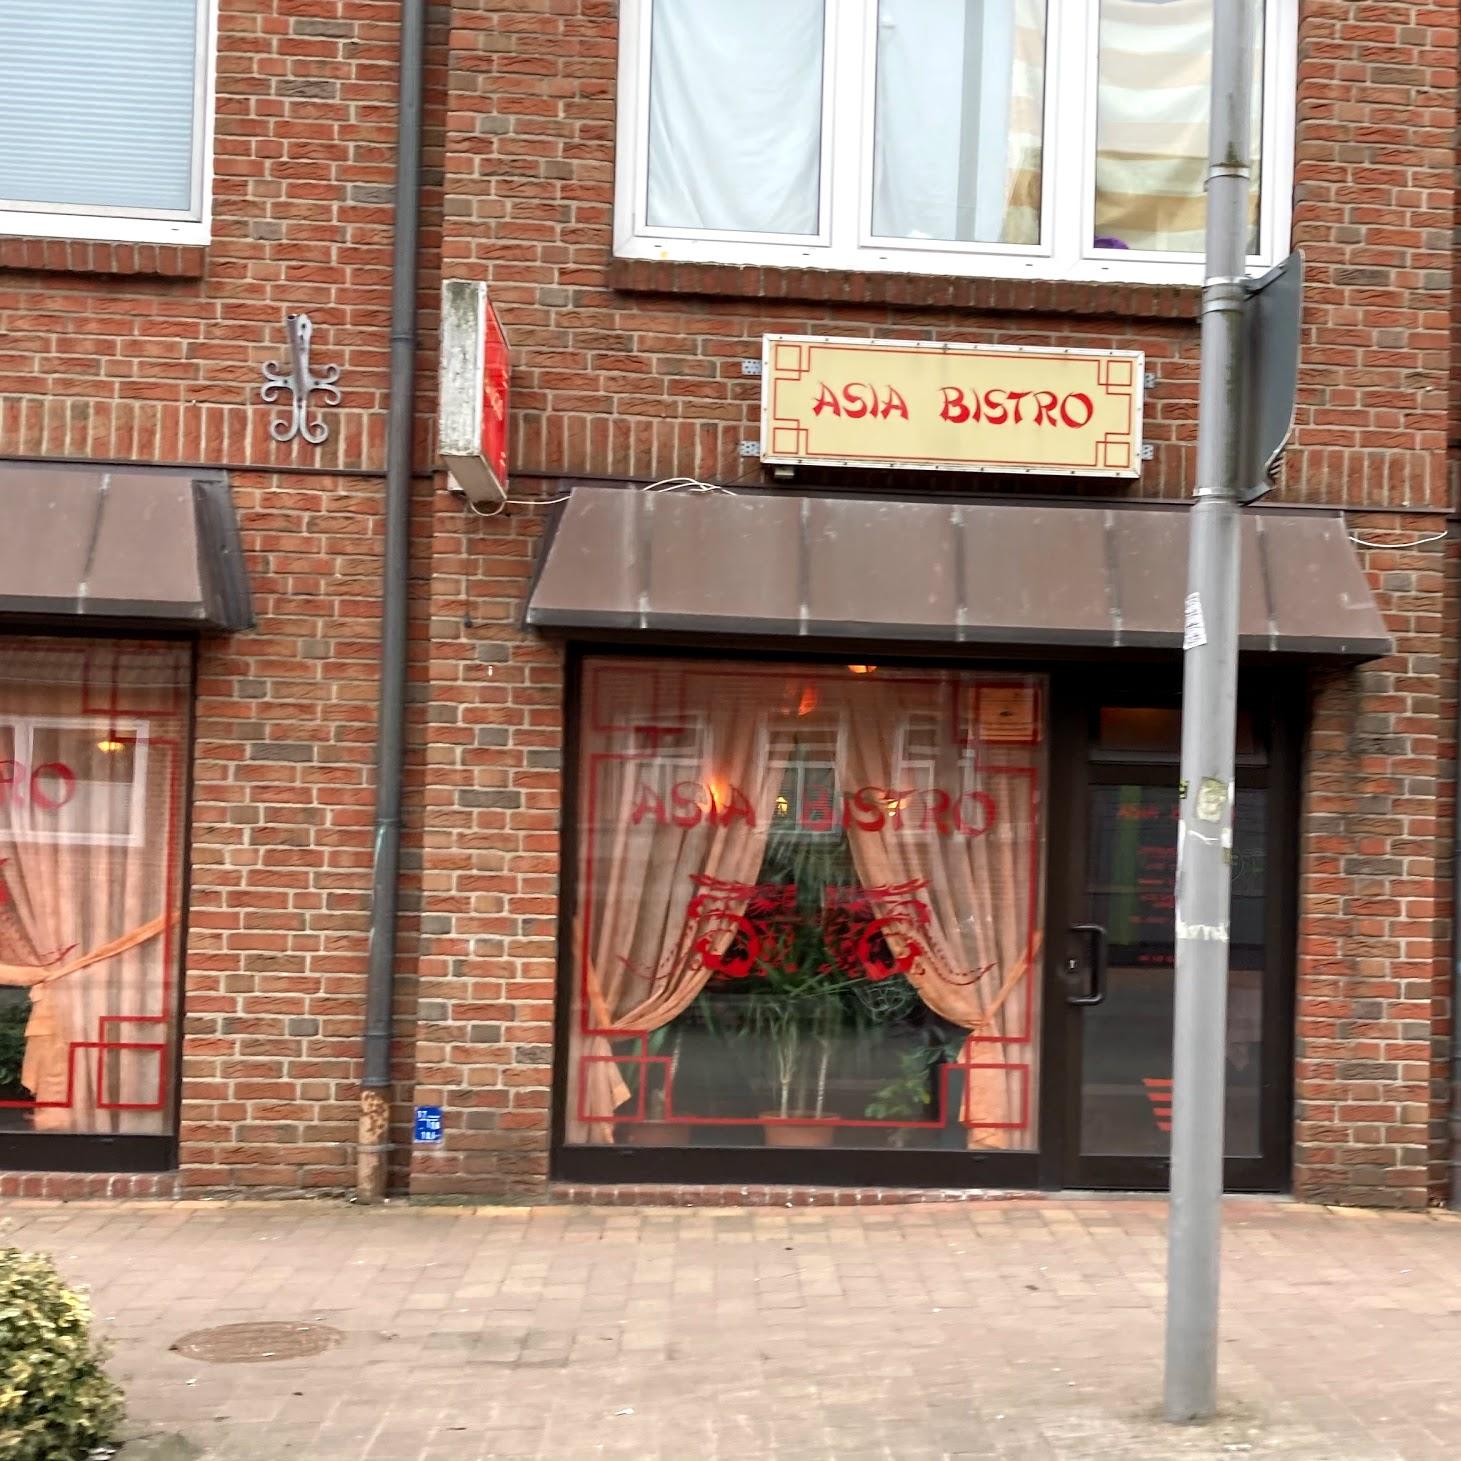 Restaurant "Asia Bistro in" in Bredstedt